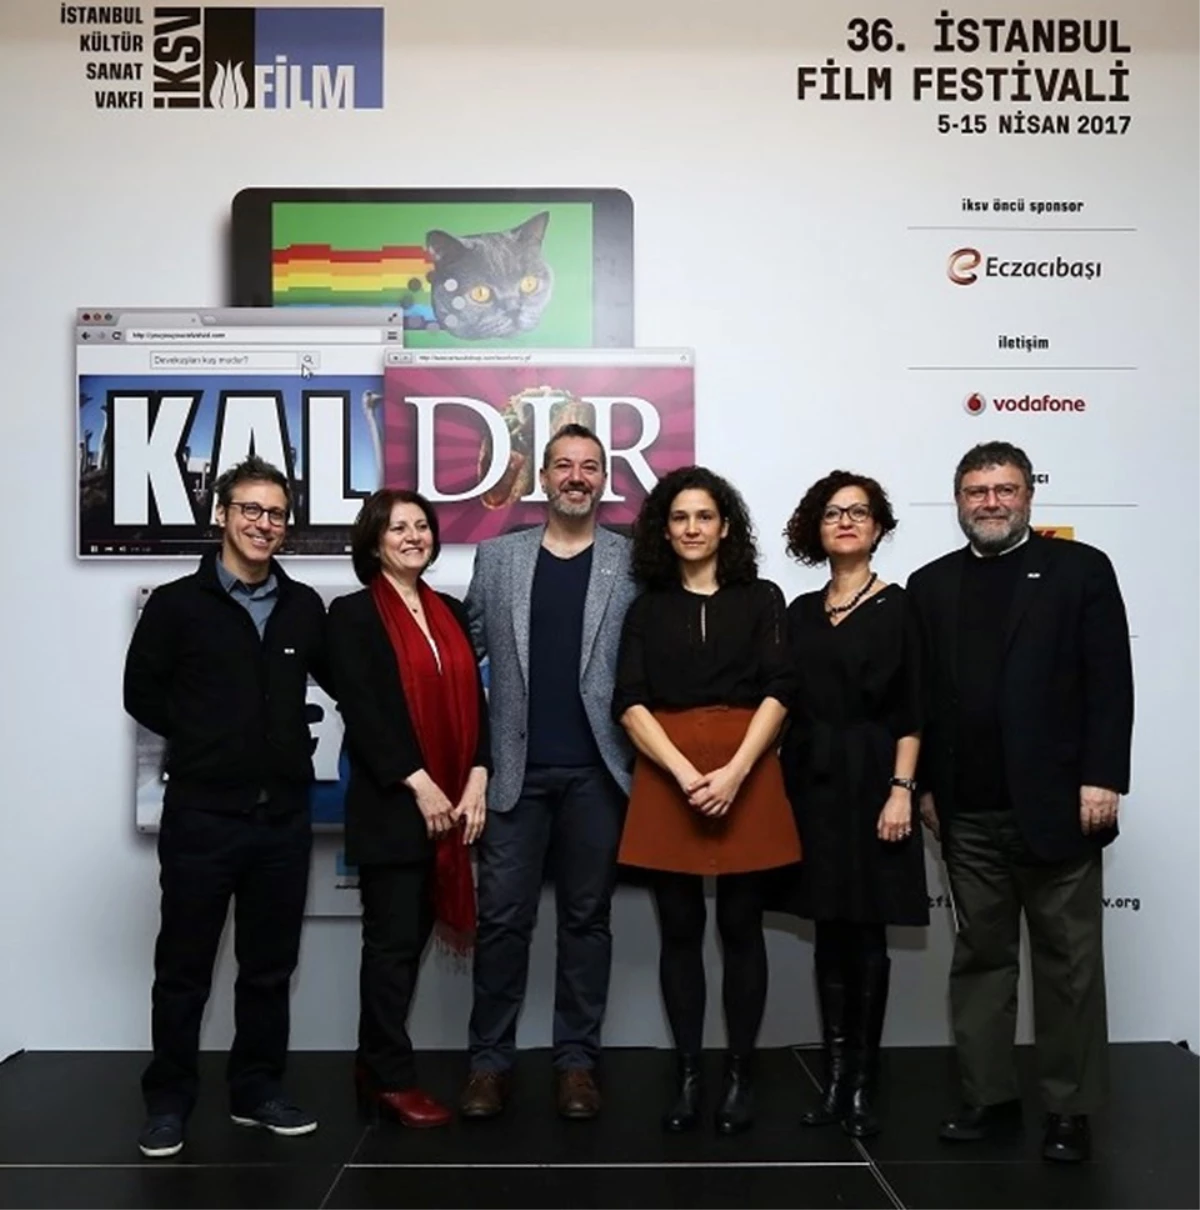 Dha İstanbul - İstanbul Film Festivali 36. Kez Sinemaseverlerle Buluşacak